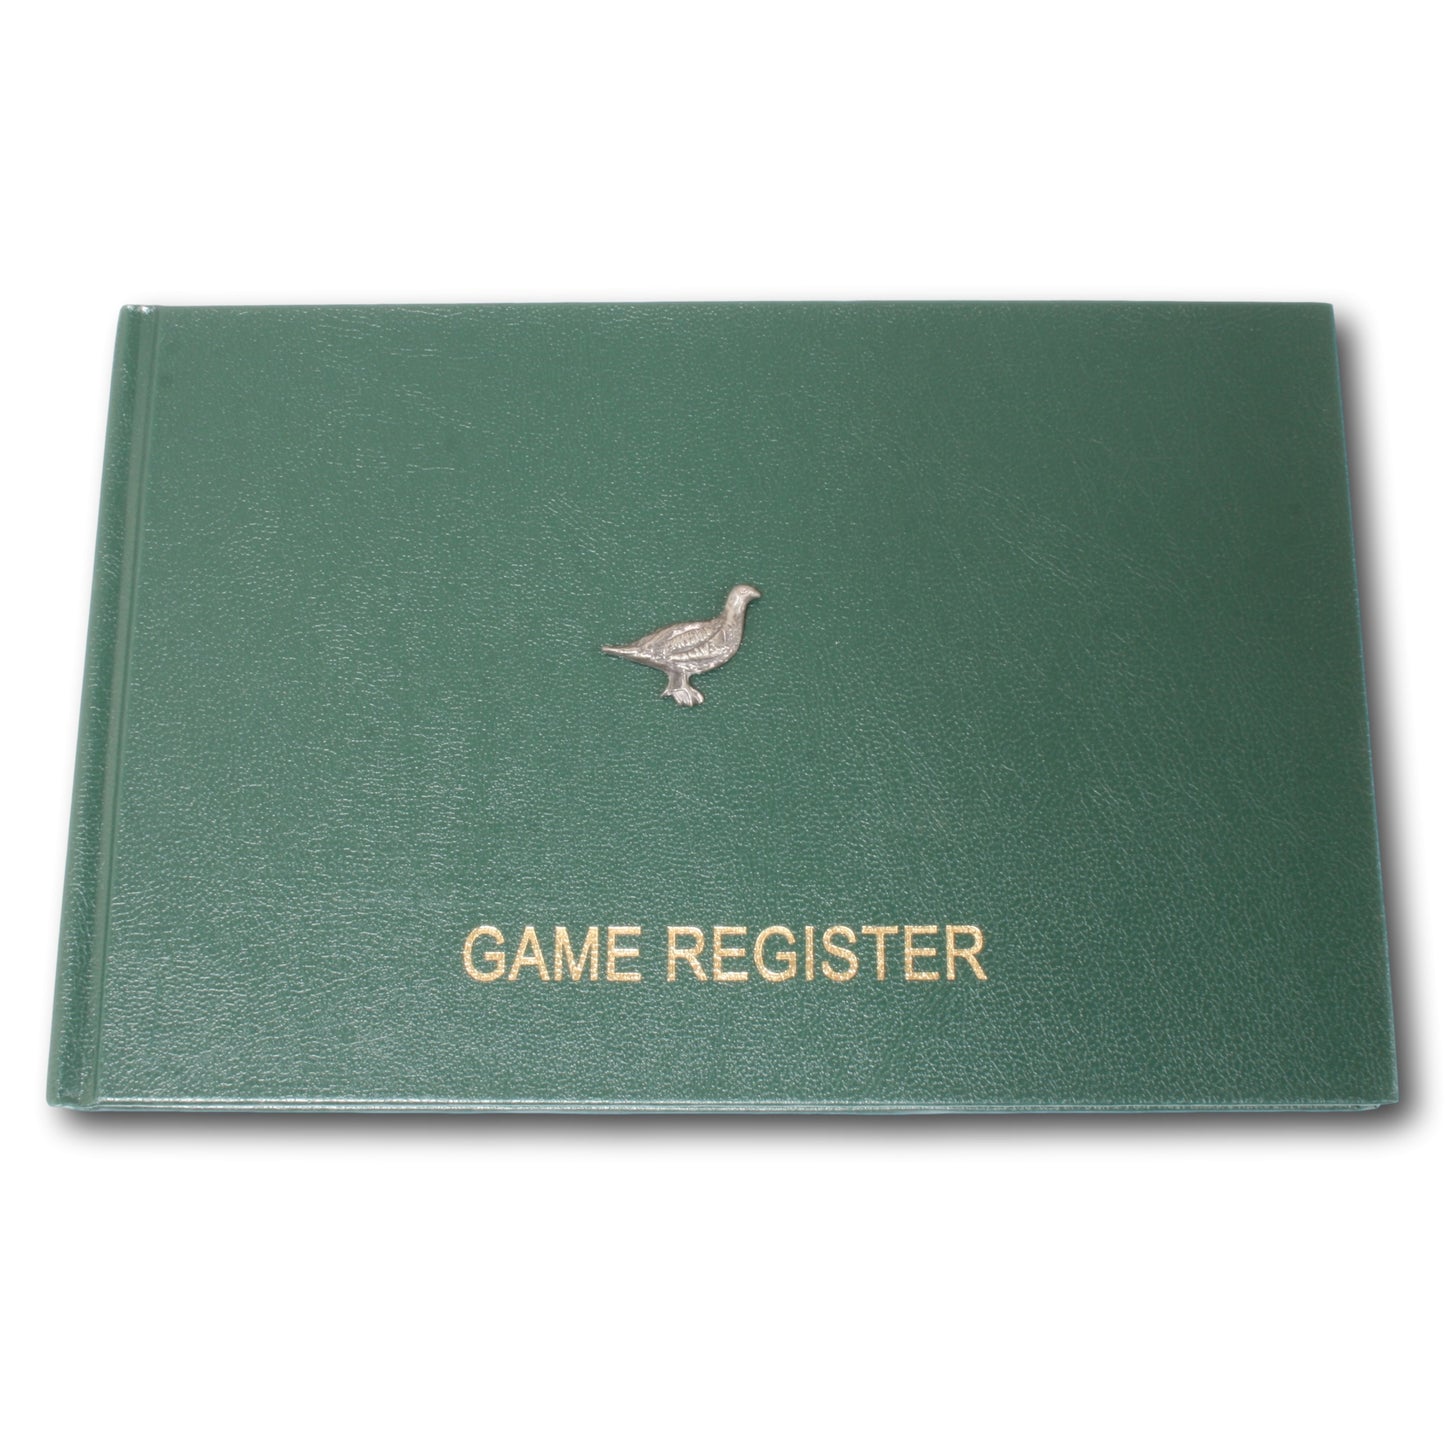 Grouse Game Register